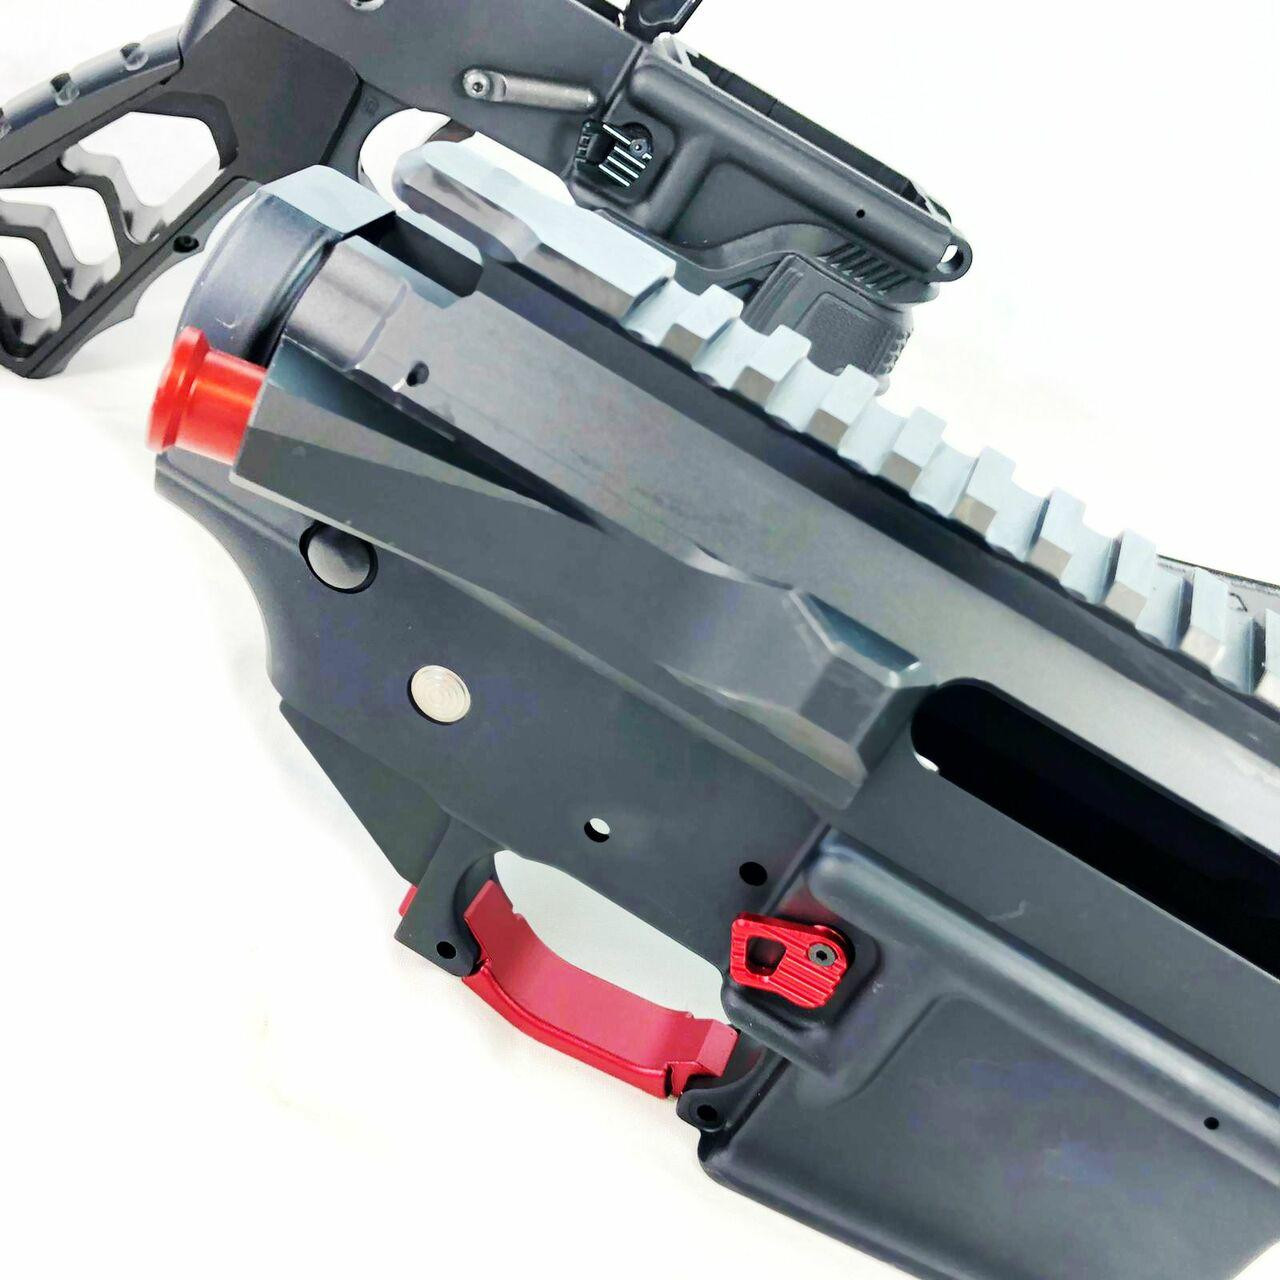 Cobratac Enhanced Trigger Guard Billet for AR-15/10/LR308 - Red